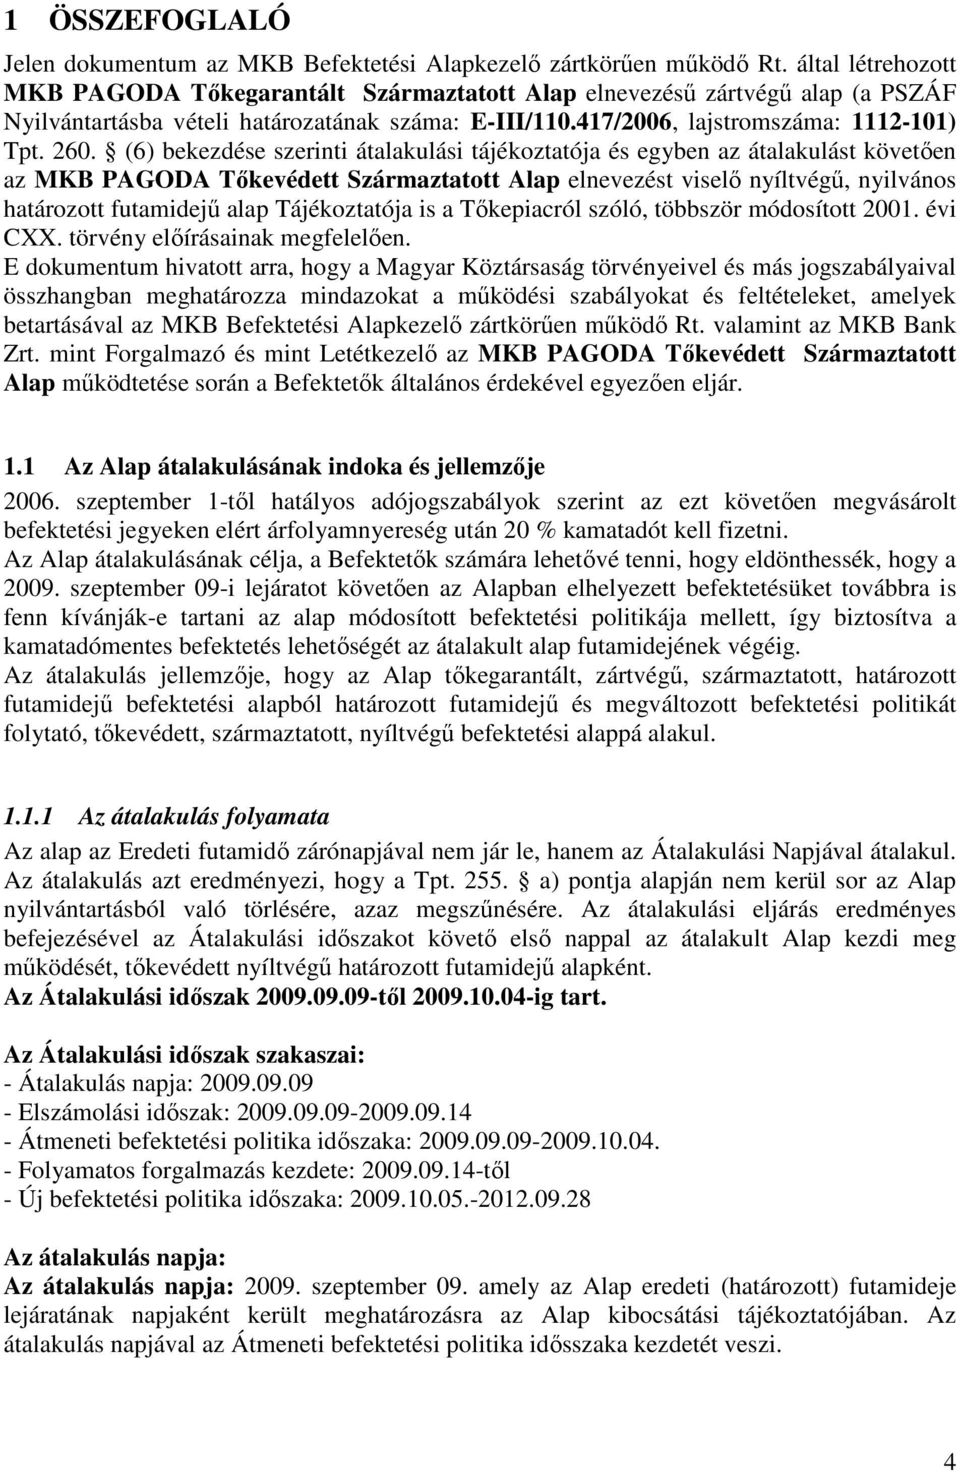 (6) bekezdése szerinti átalakulási tájékoztatója és egyben az átalakulást követıen az MKB PAGODA Tıkevédett Származtatott Alap elnevezést viselı nyíltvégő, nyilvános határozott futamidejő alap